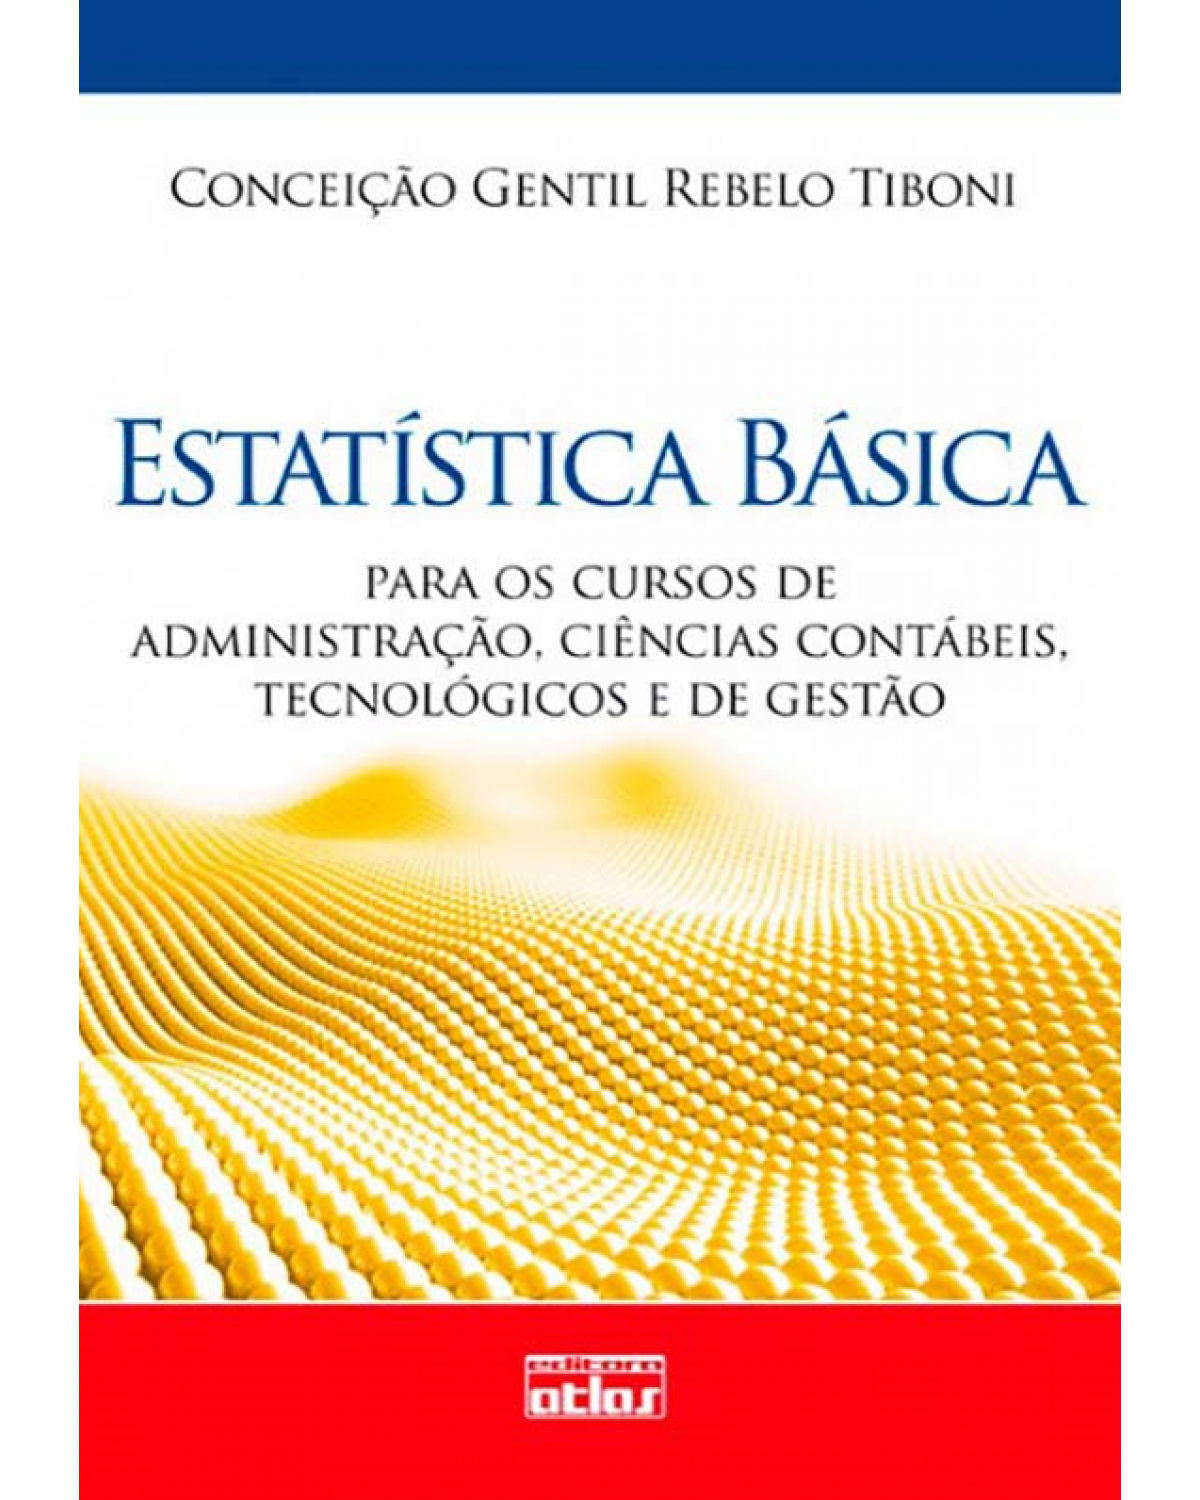 Estatística básica - Para os cursos de administração, ciências contábeis, tecnológicos e de gestão - 1ª Edição | 2010